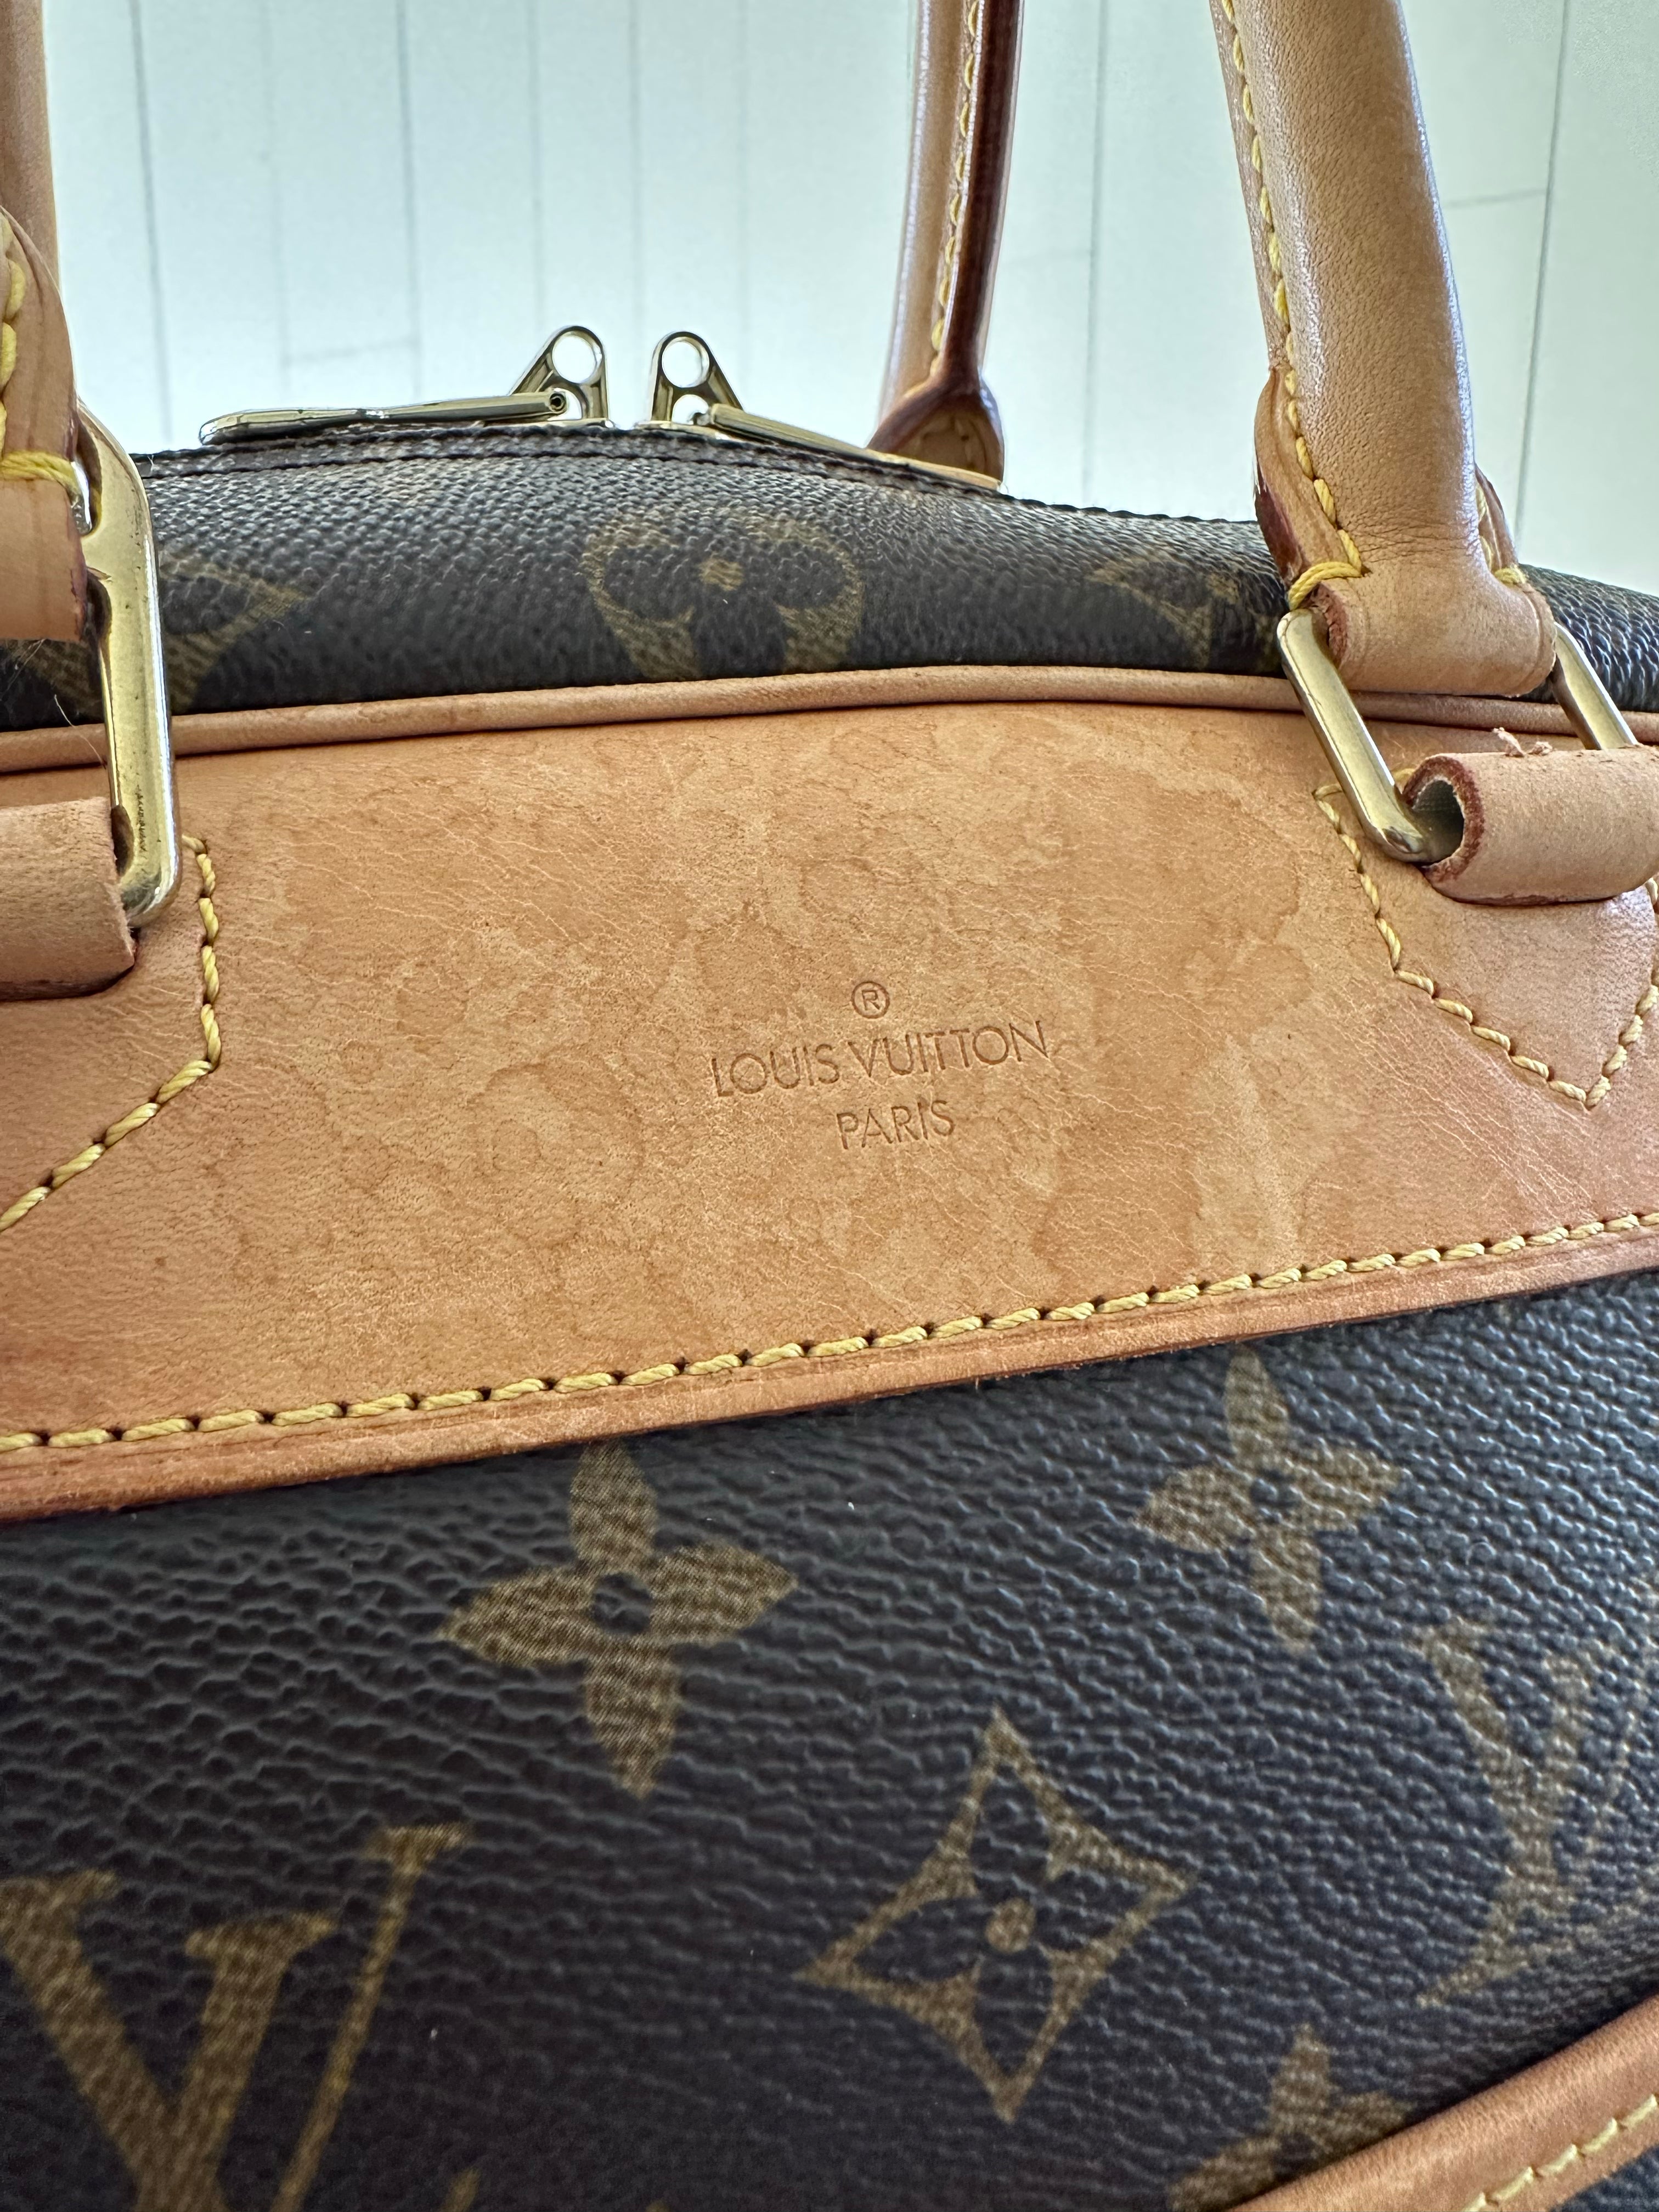 Louis Vuitton Deauville Monogram Canvas Top Handle Bag on SALE